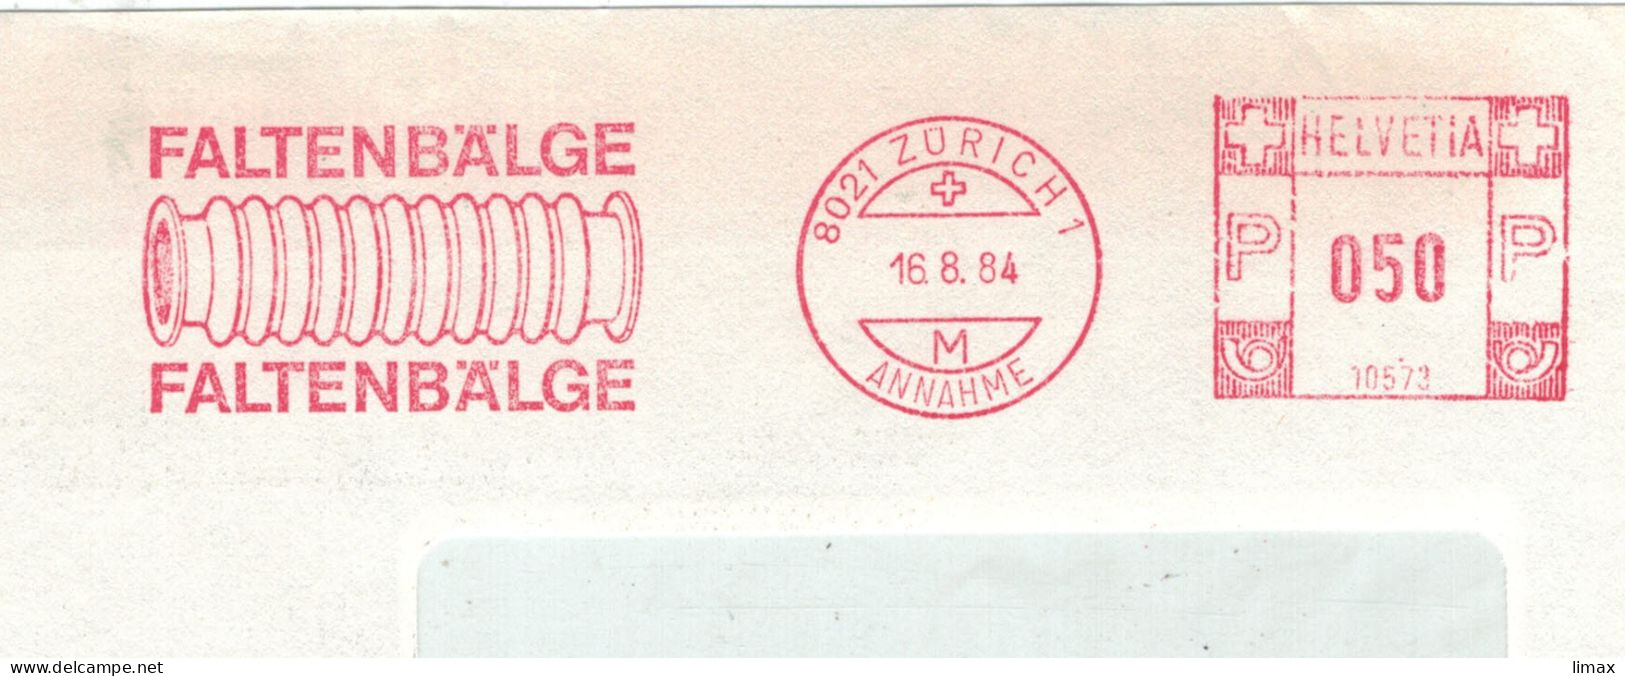 8021 Zürich 1984 Annahme Faltenbälge No. 10573 - Aufsatz Für Fotoapparate Nahaufnahmen - Frankiermaschinen (FraMA)